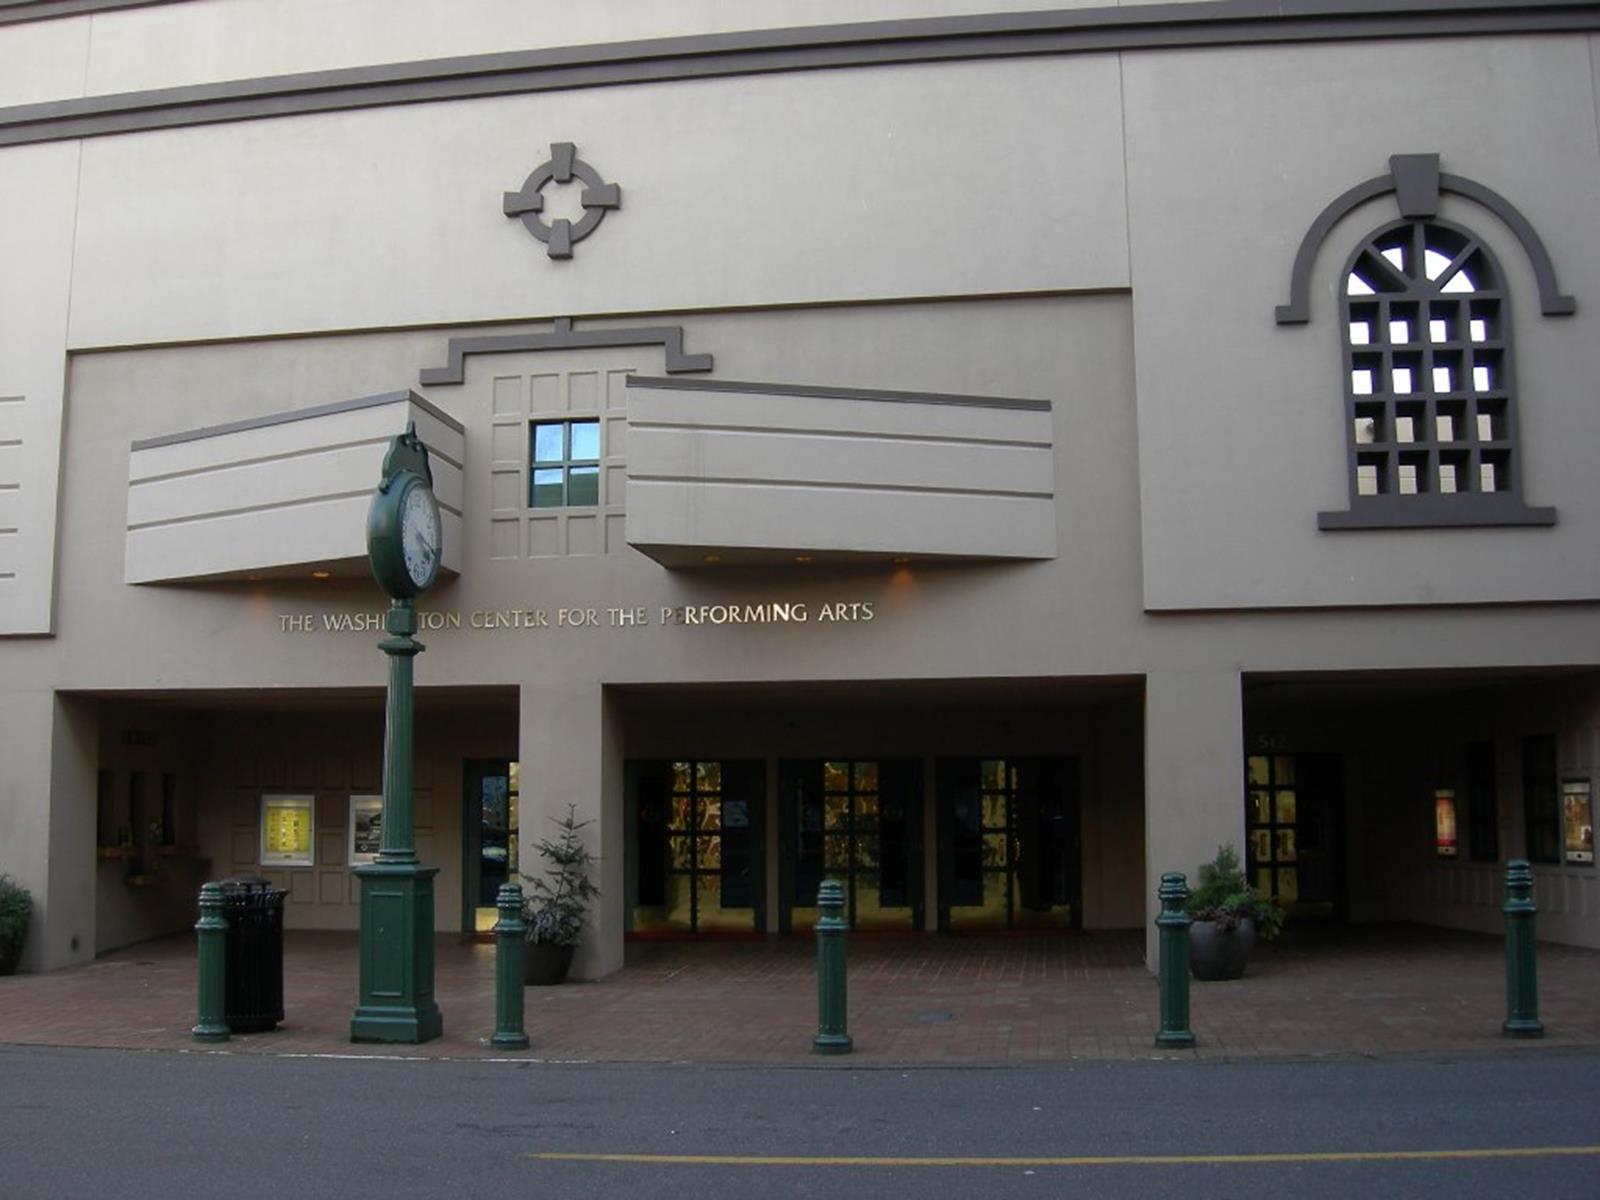 The Washington Center for Performing Arts. Credit Joe Mabel at en.wikipedia.